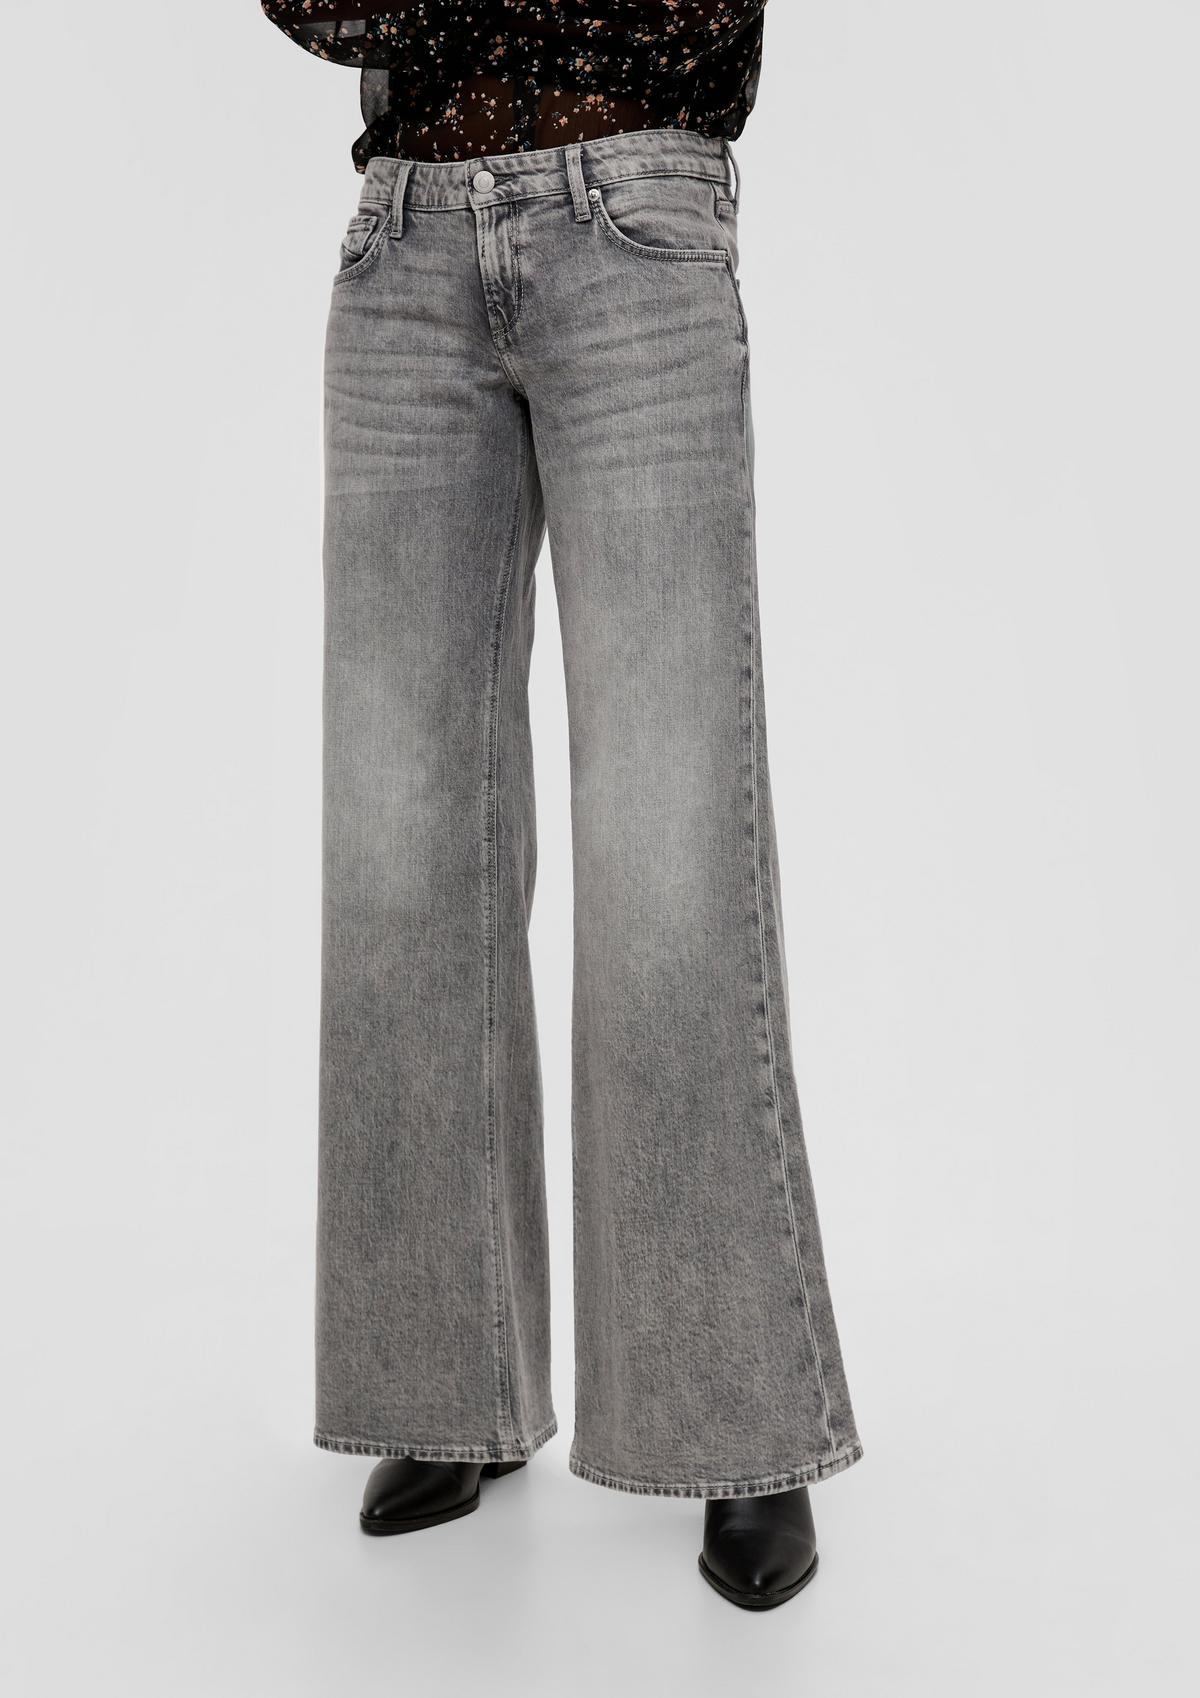 s.Oliver Catie jeans / slim fit / low rise / wide leg / cotton blend